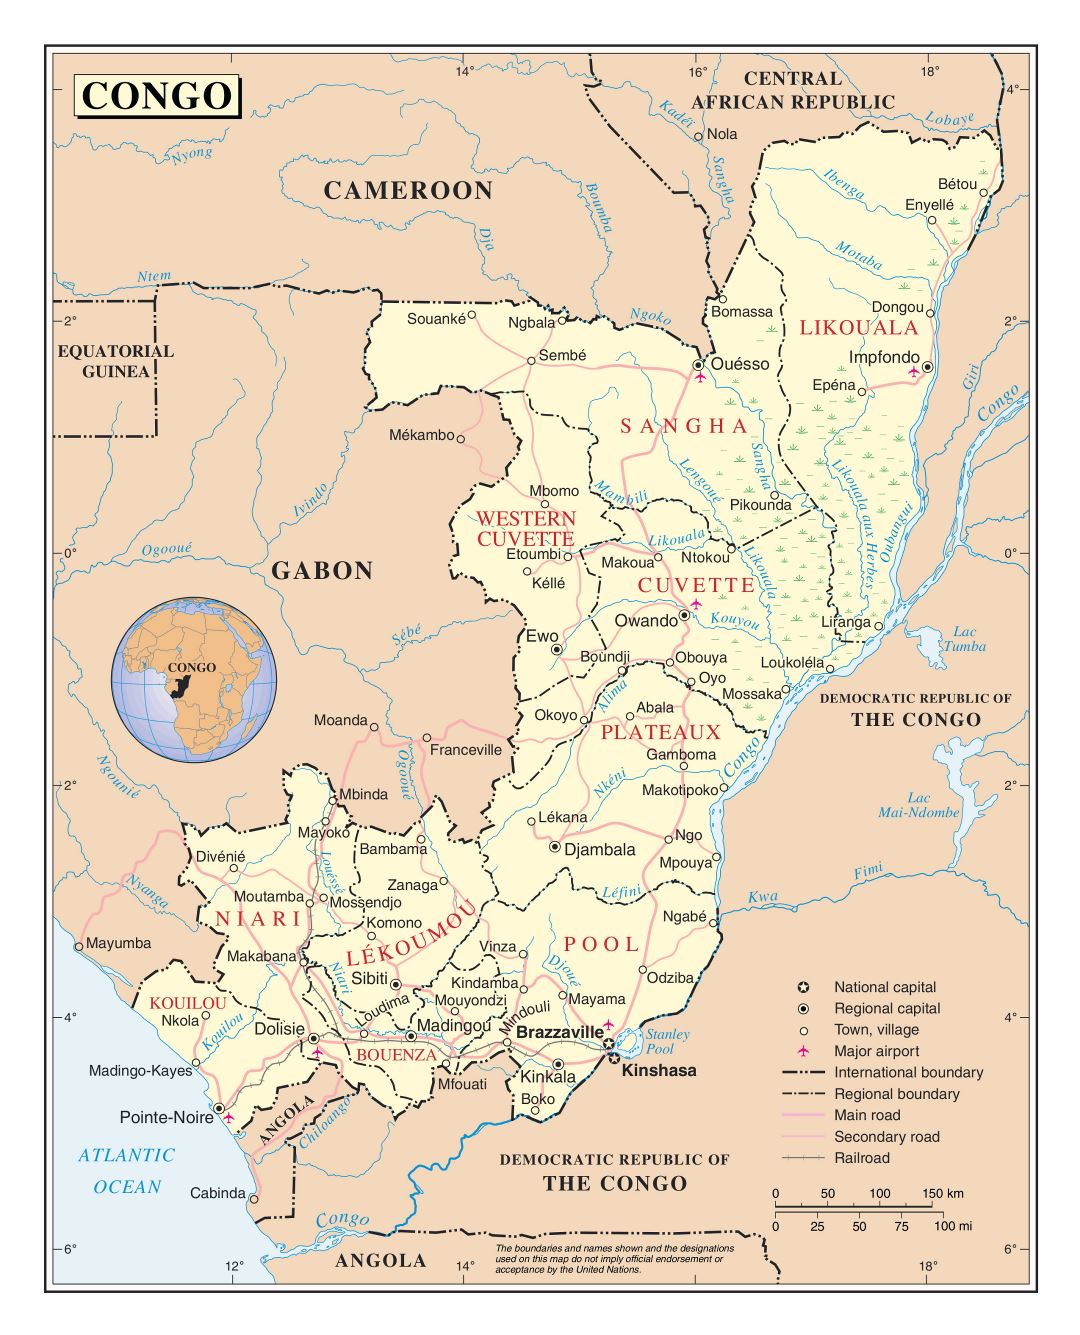 Большая детальная политическая и административная карта Республики Конго с дорогами, железными дорогами, городами и аэропортами